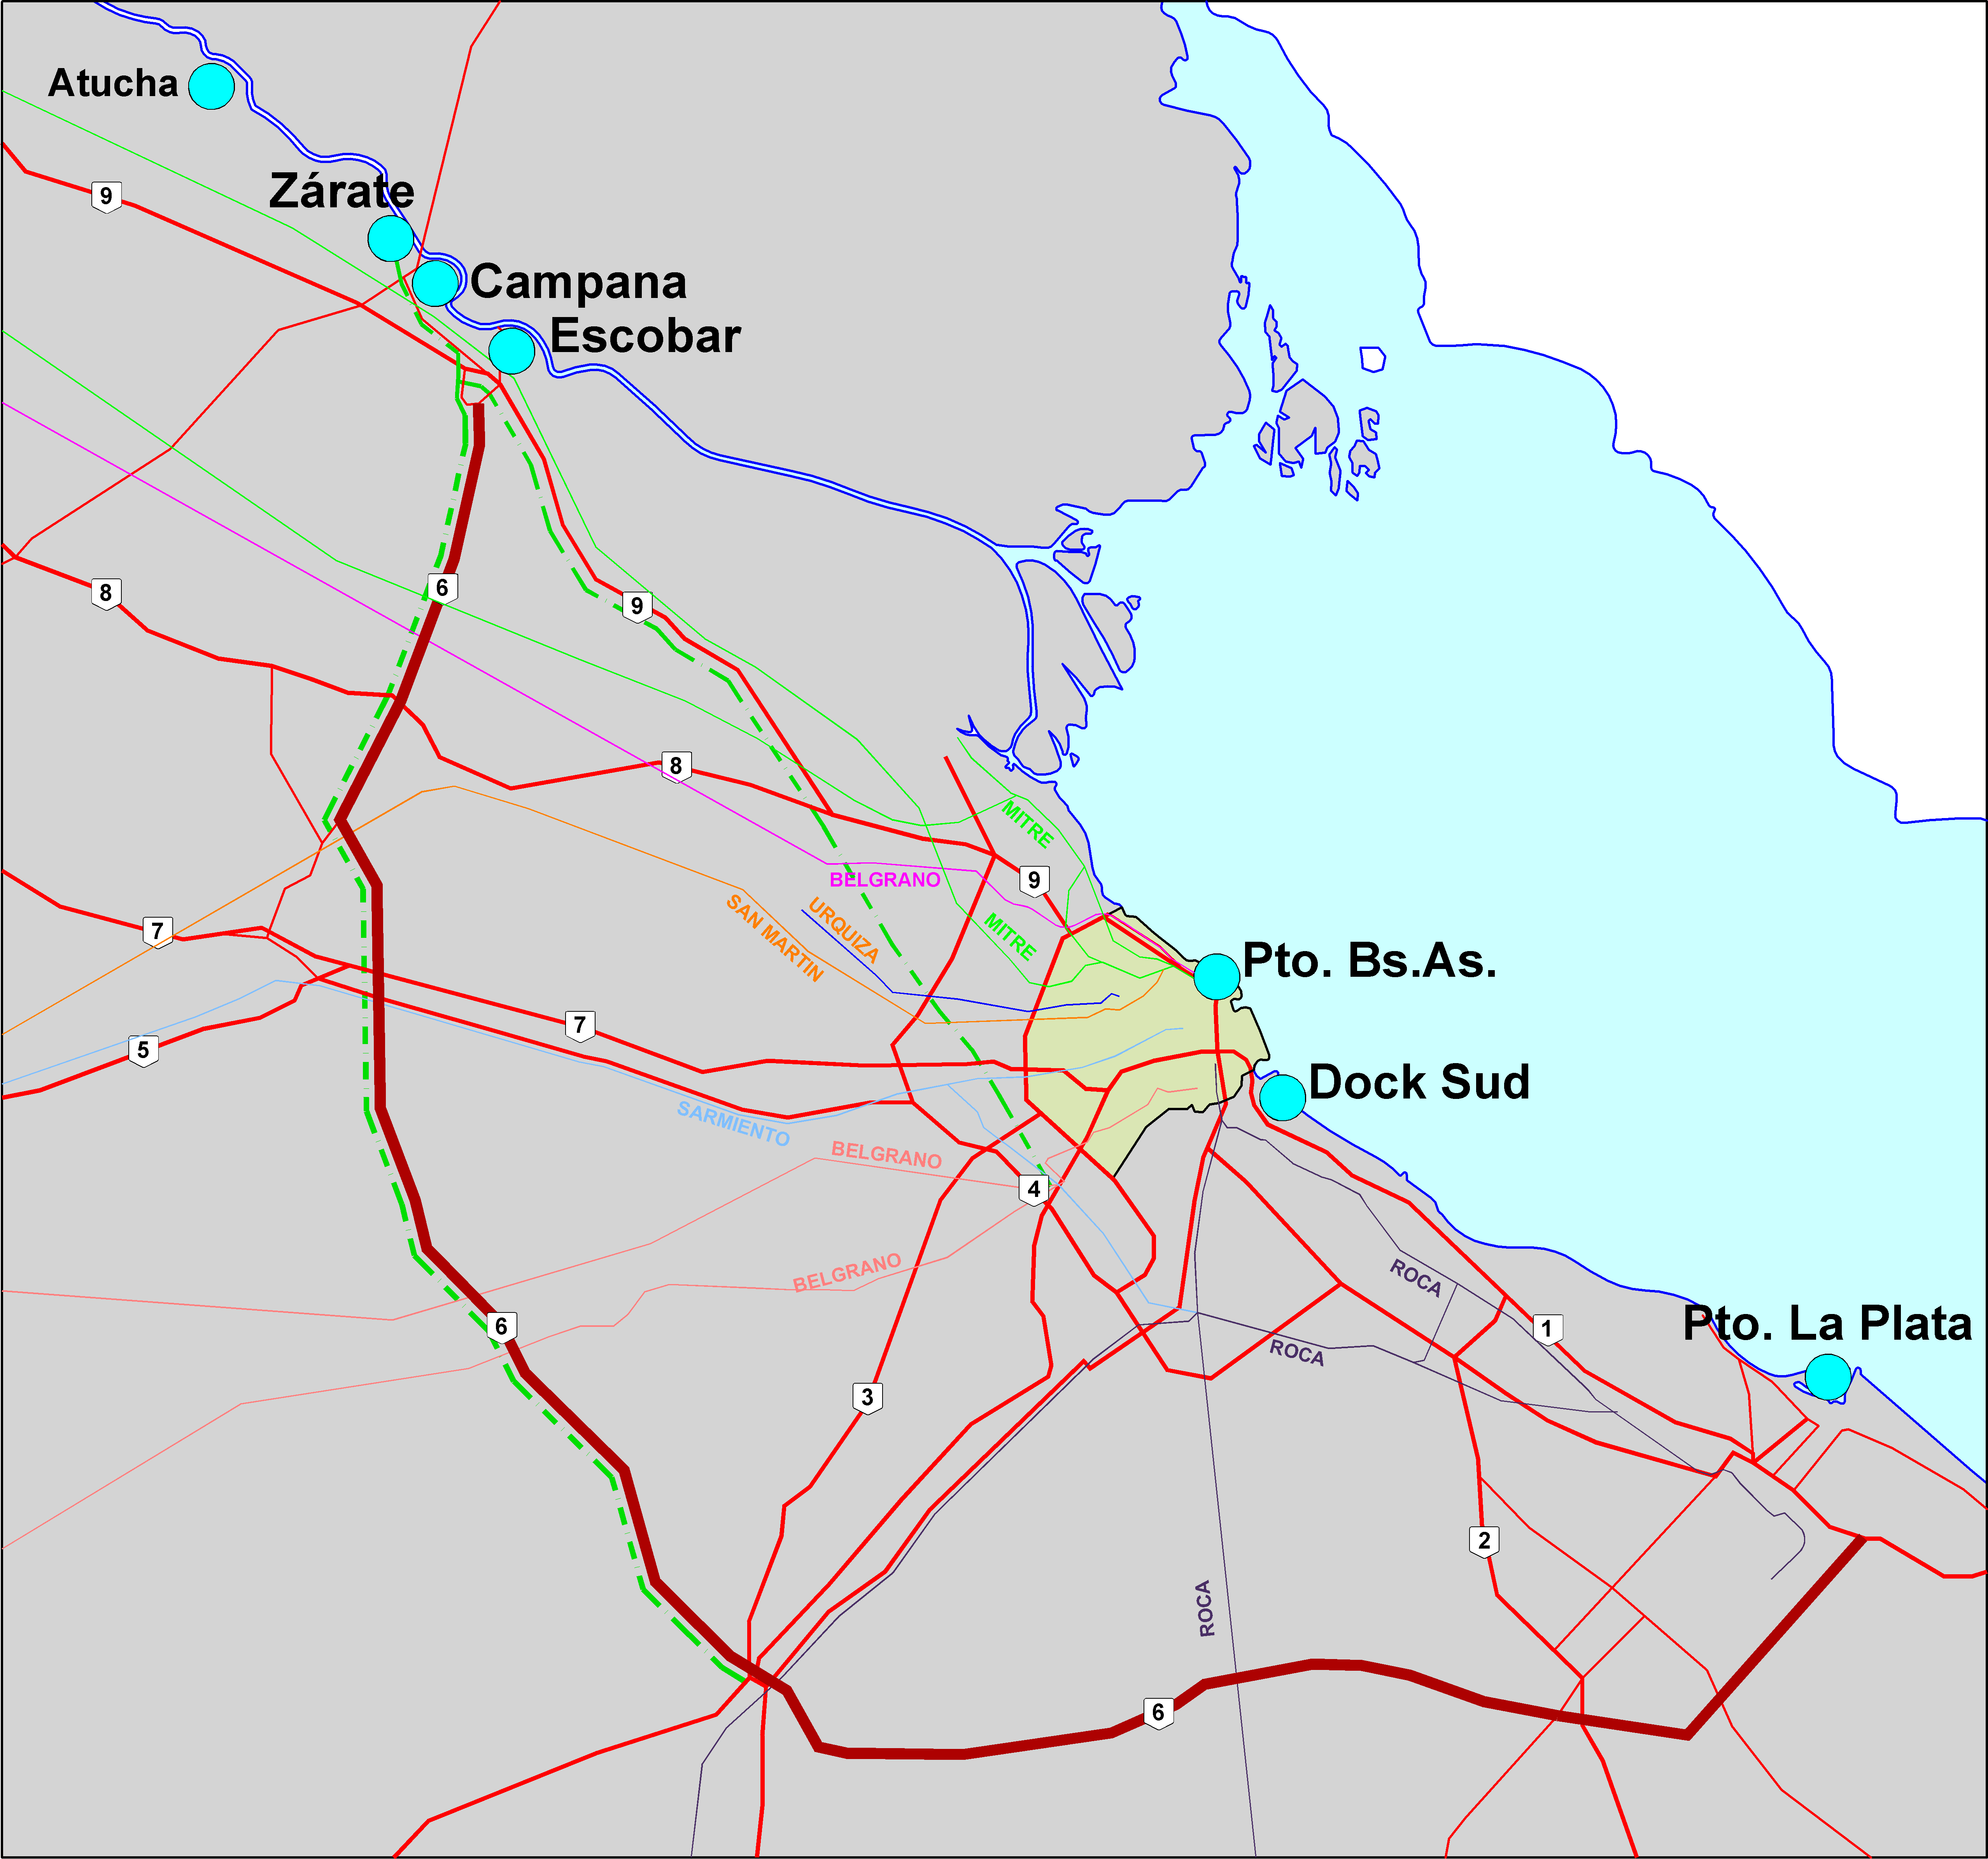 Plan Estratégico Competitivo para el Desarrollo del Sistema Portuario del Área Metropolitana de Buenos Aires. AMBA al 2030